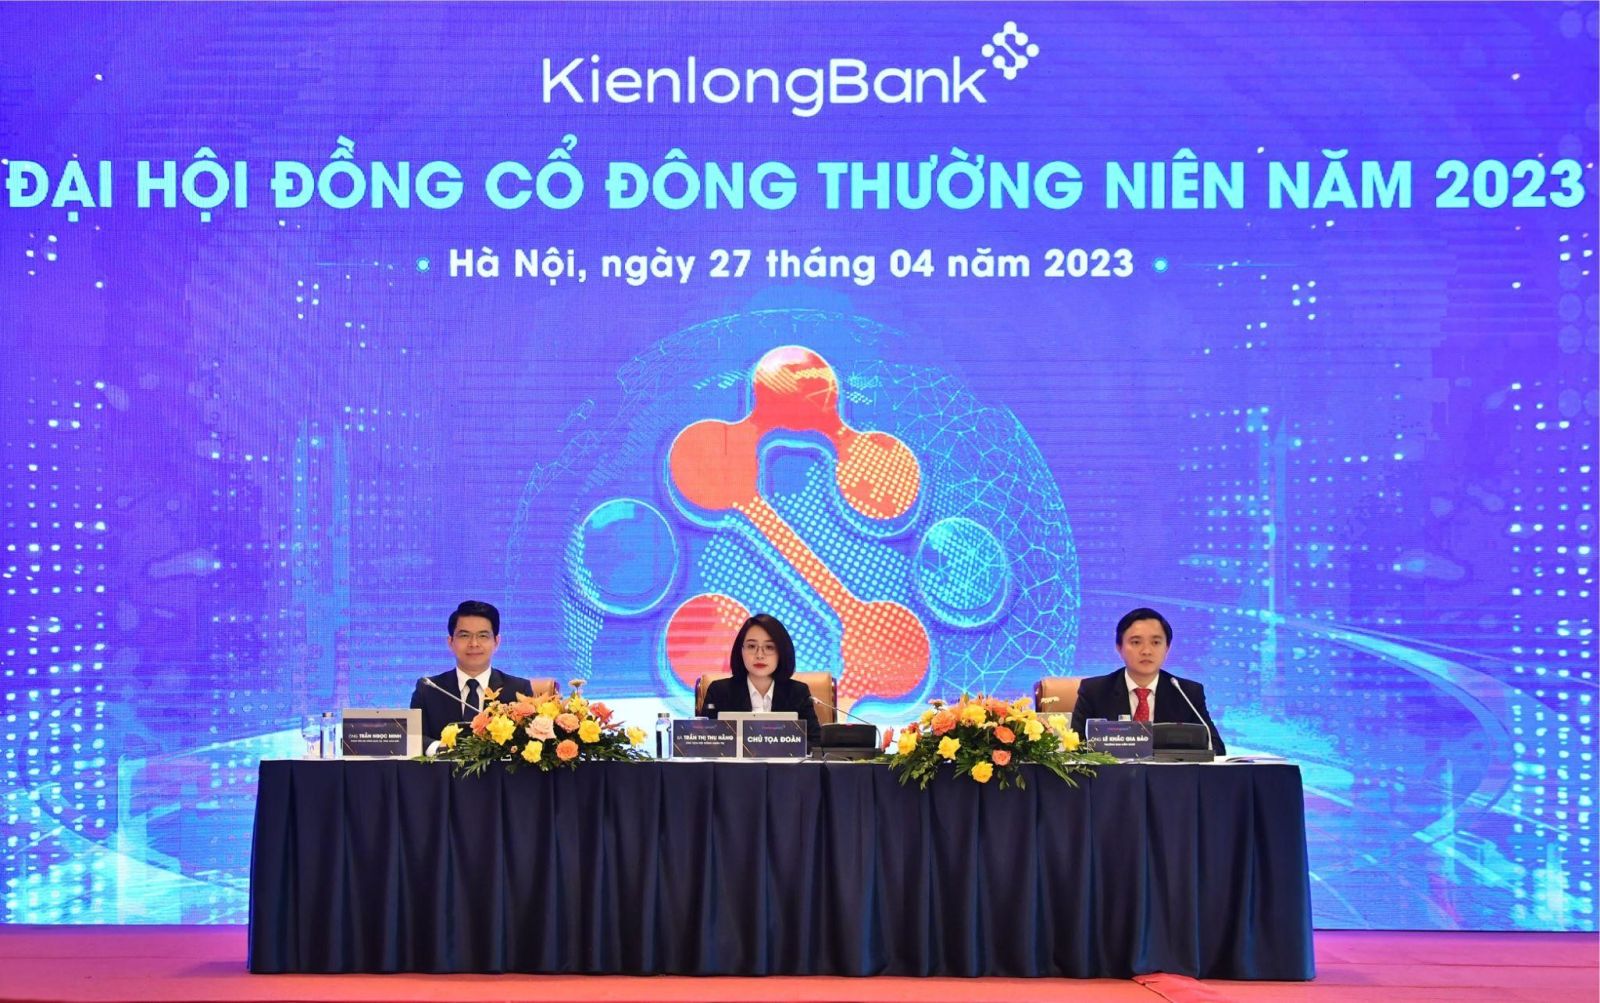 KienlongBank tổ chức thành công ĐHĐCĐ thường niên 2023